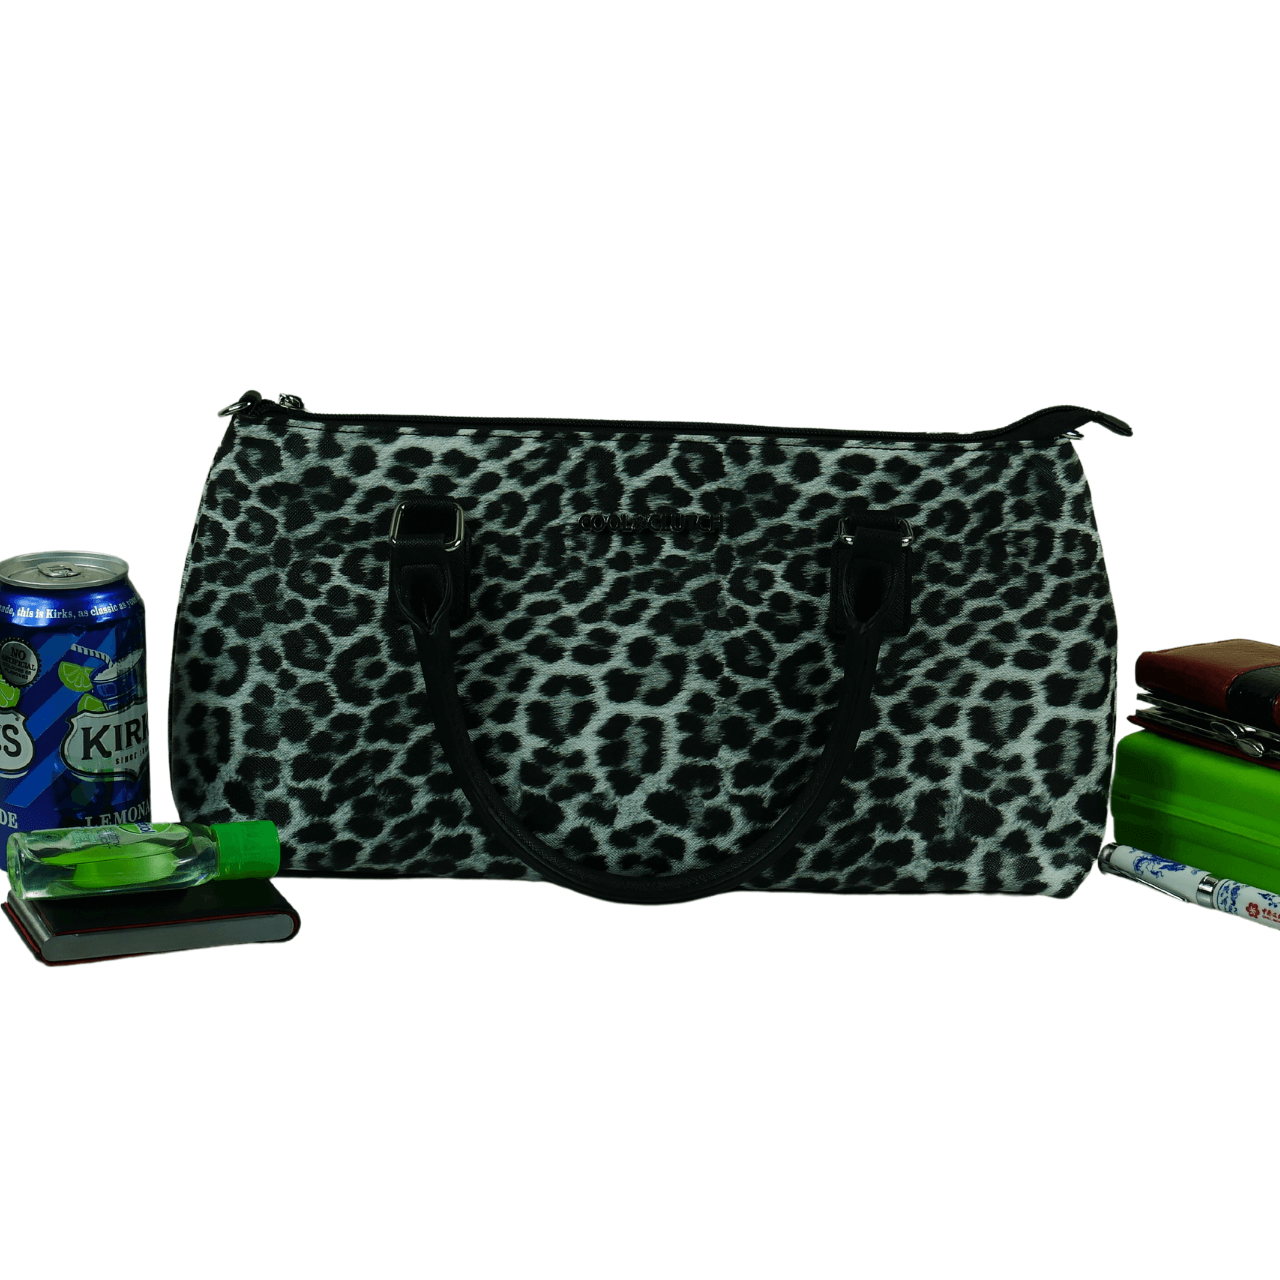 Emma Handbag Cooler bag (Black/White Leopard)